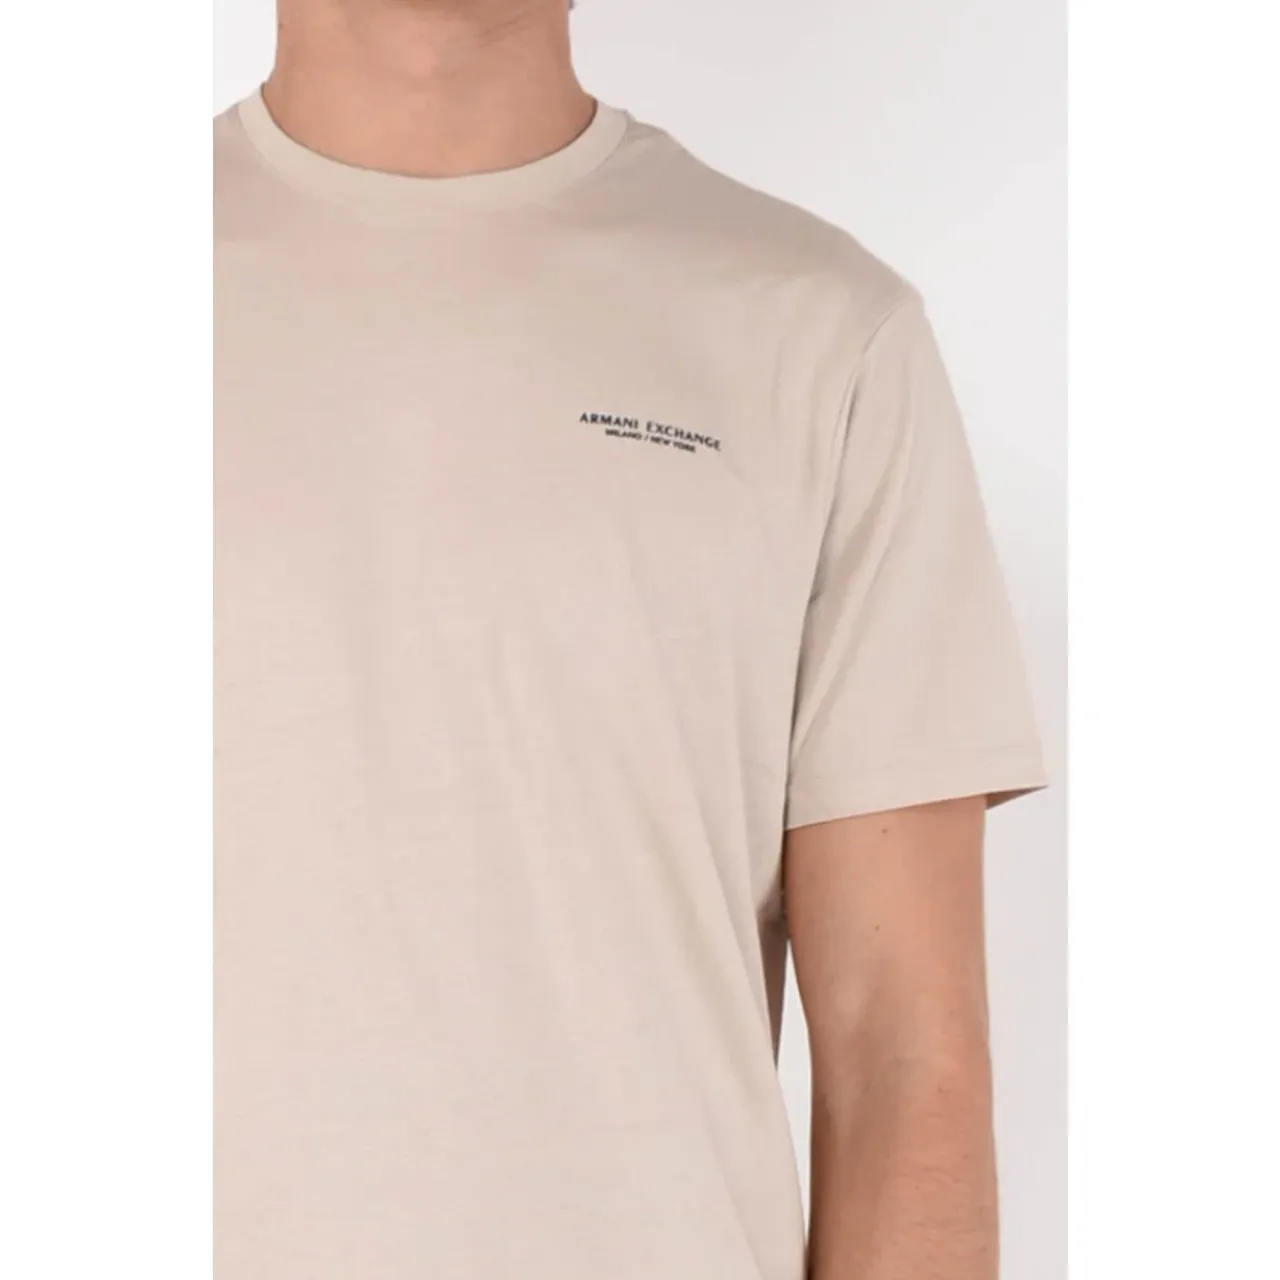 Armani T-Shirt mit Label-Print 8NZT91.Z8H4Z - Preise vergleichen